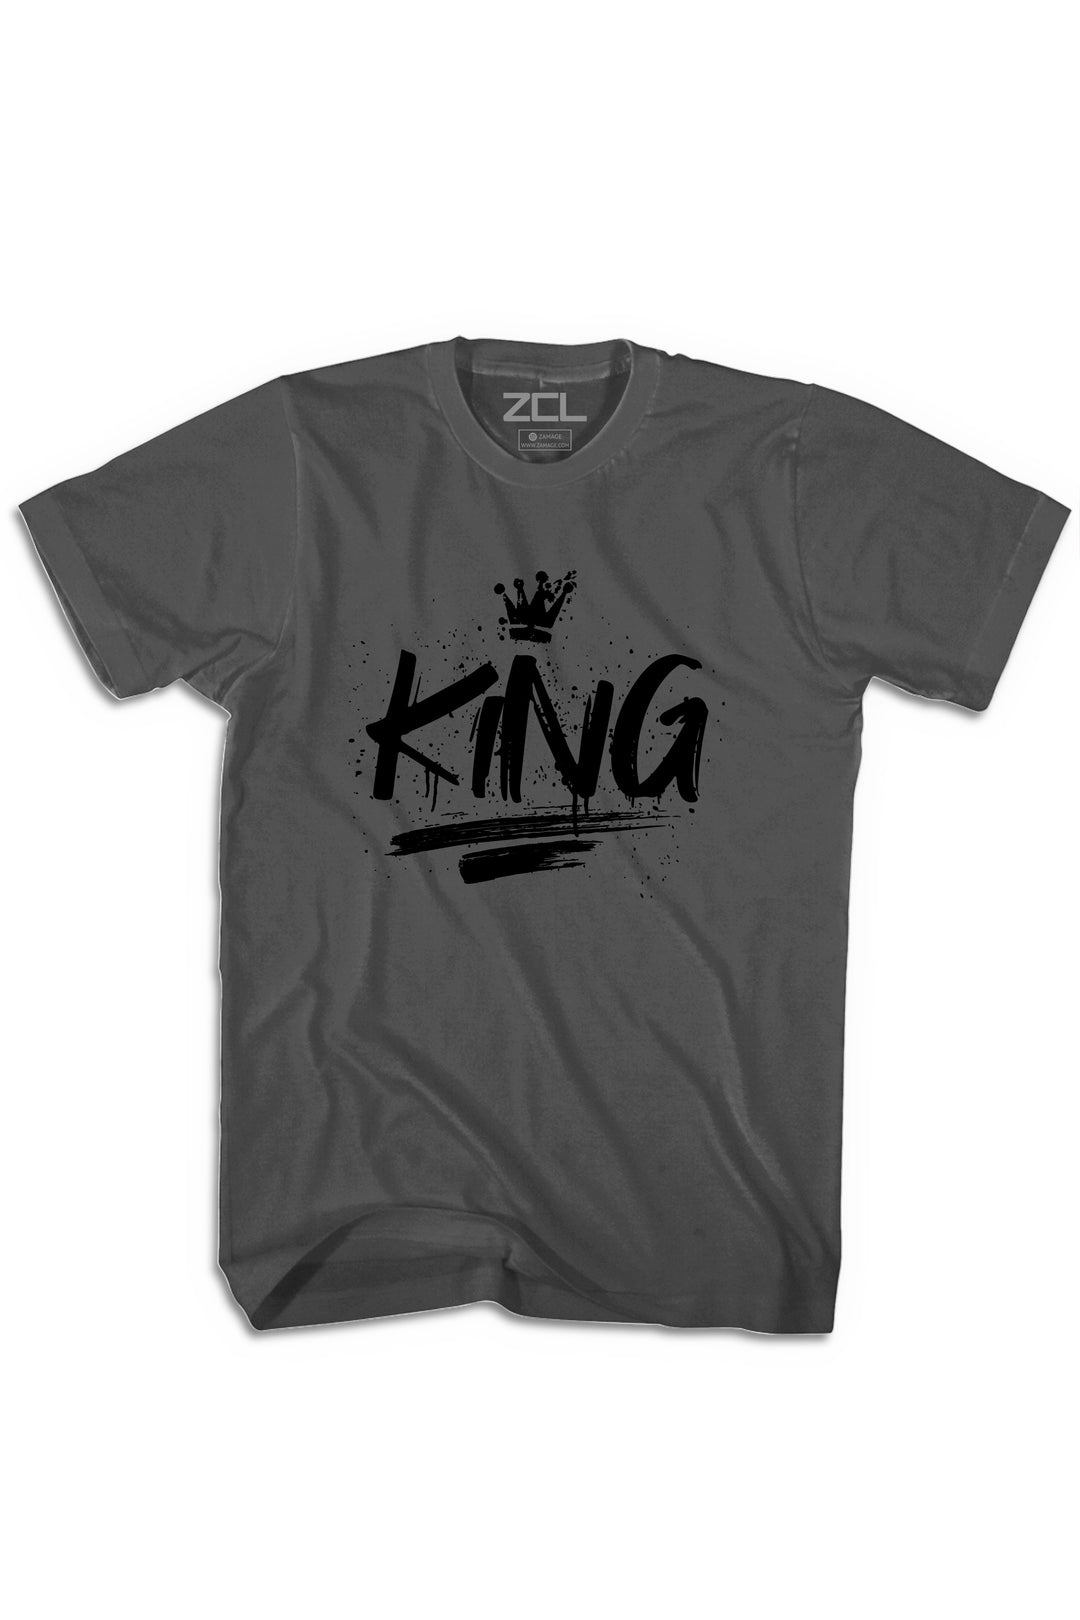 King Tee (Black Logo) - Zamage